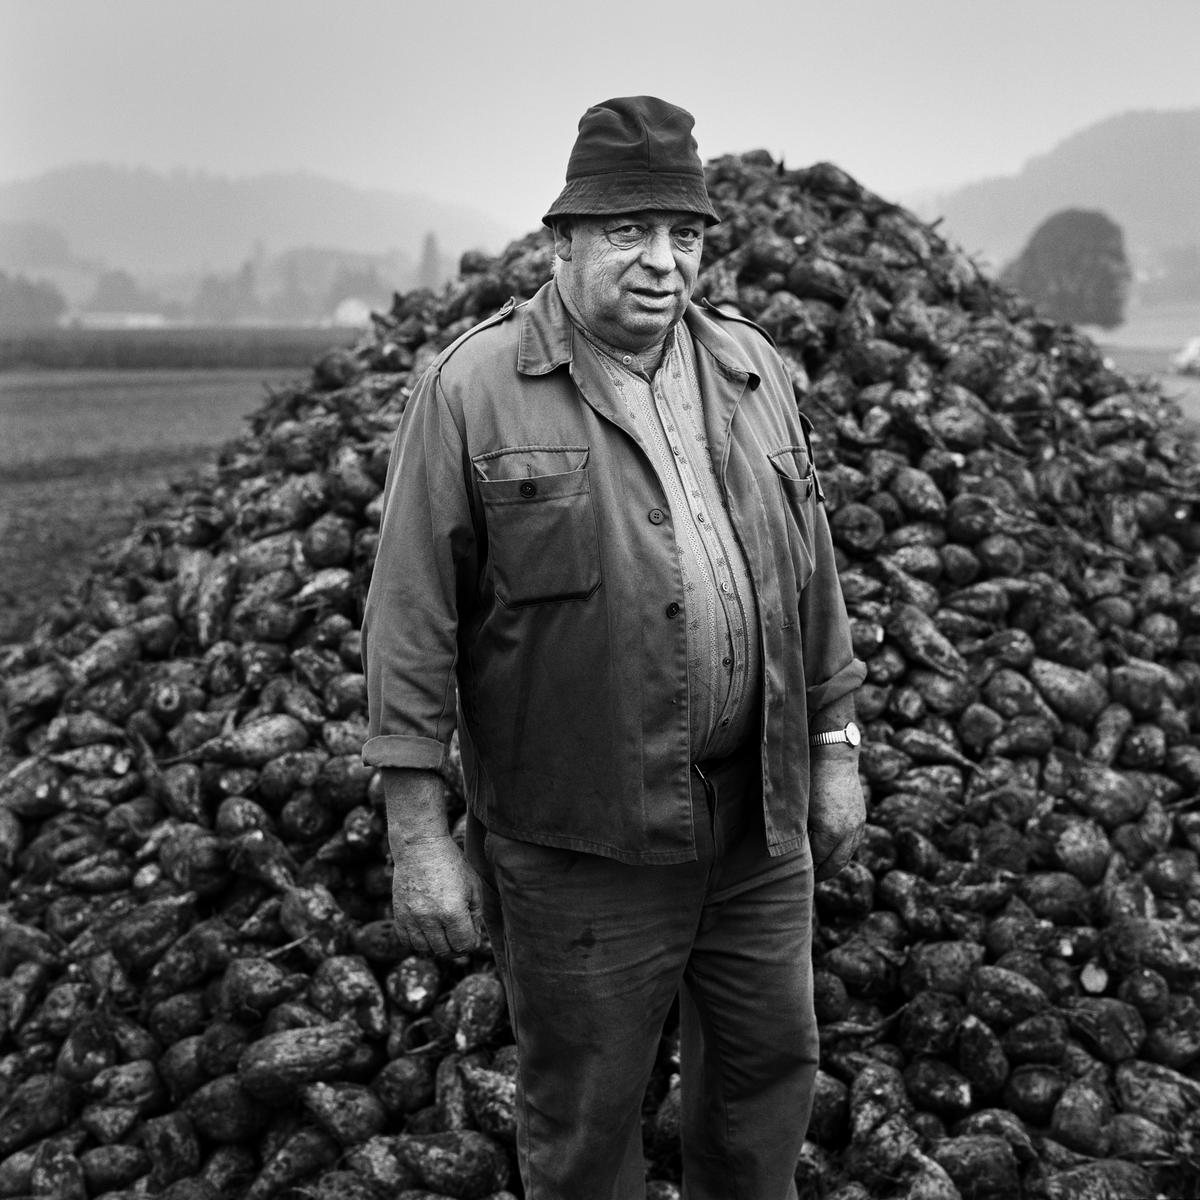 Der einheimische Zuckerrübenanbau und damit die Produktion von Schweizer Zucker sind ohne politische Massnahmen akut gefährdet. (Bild: Markus Bühler)